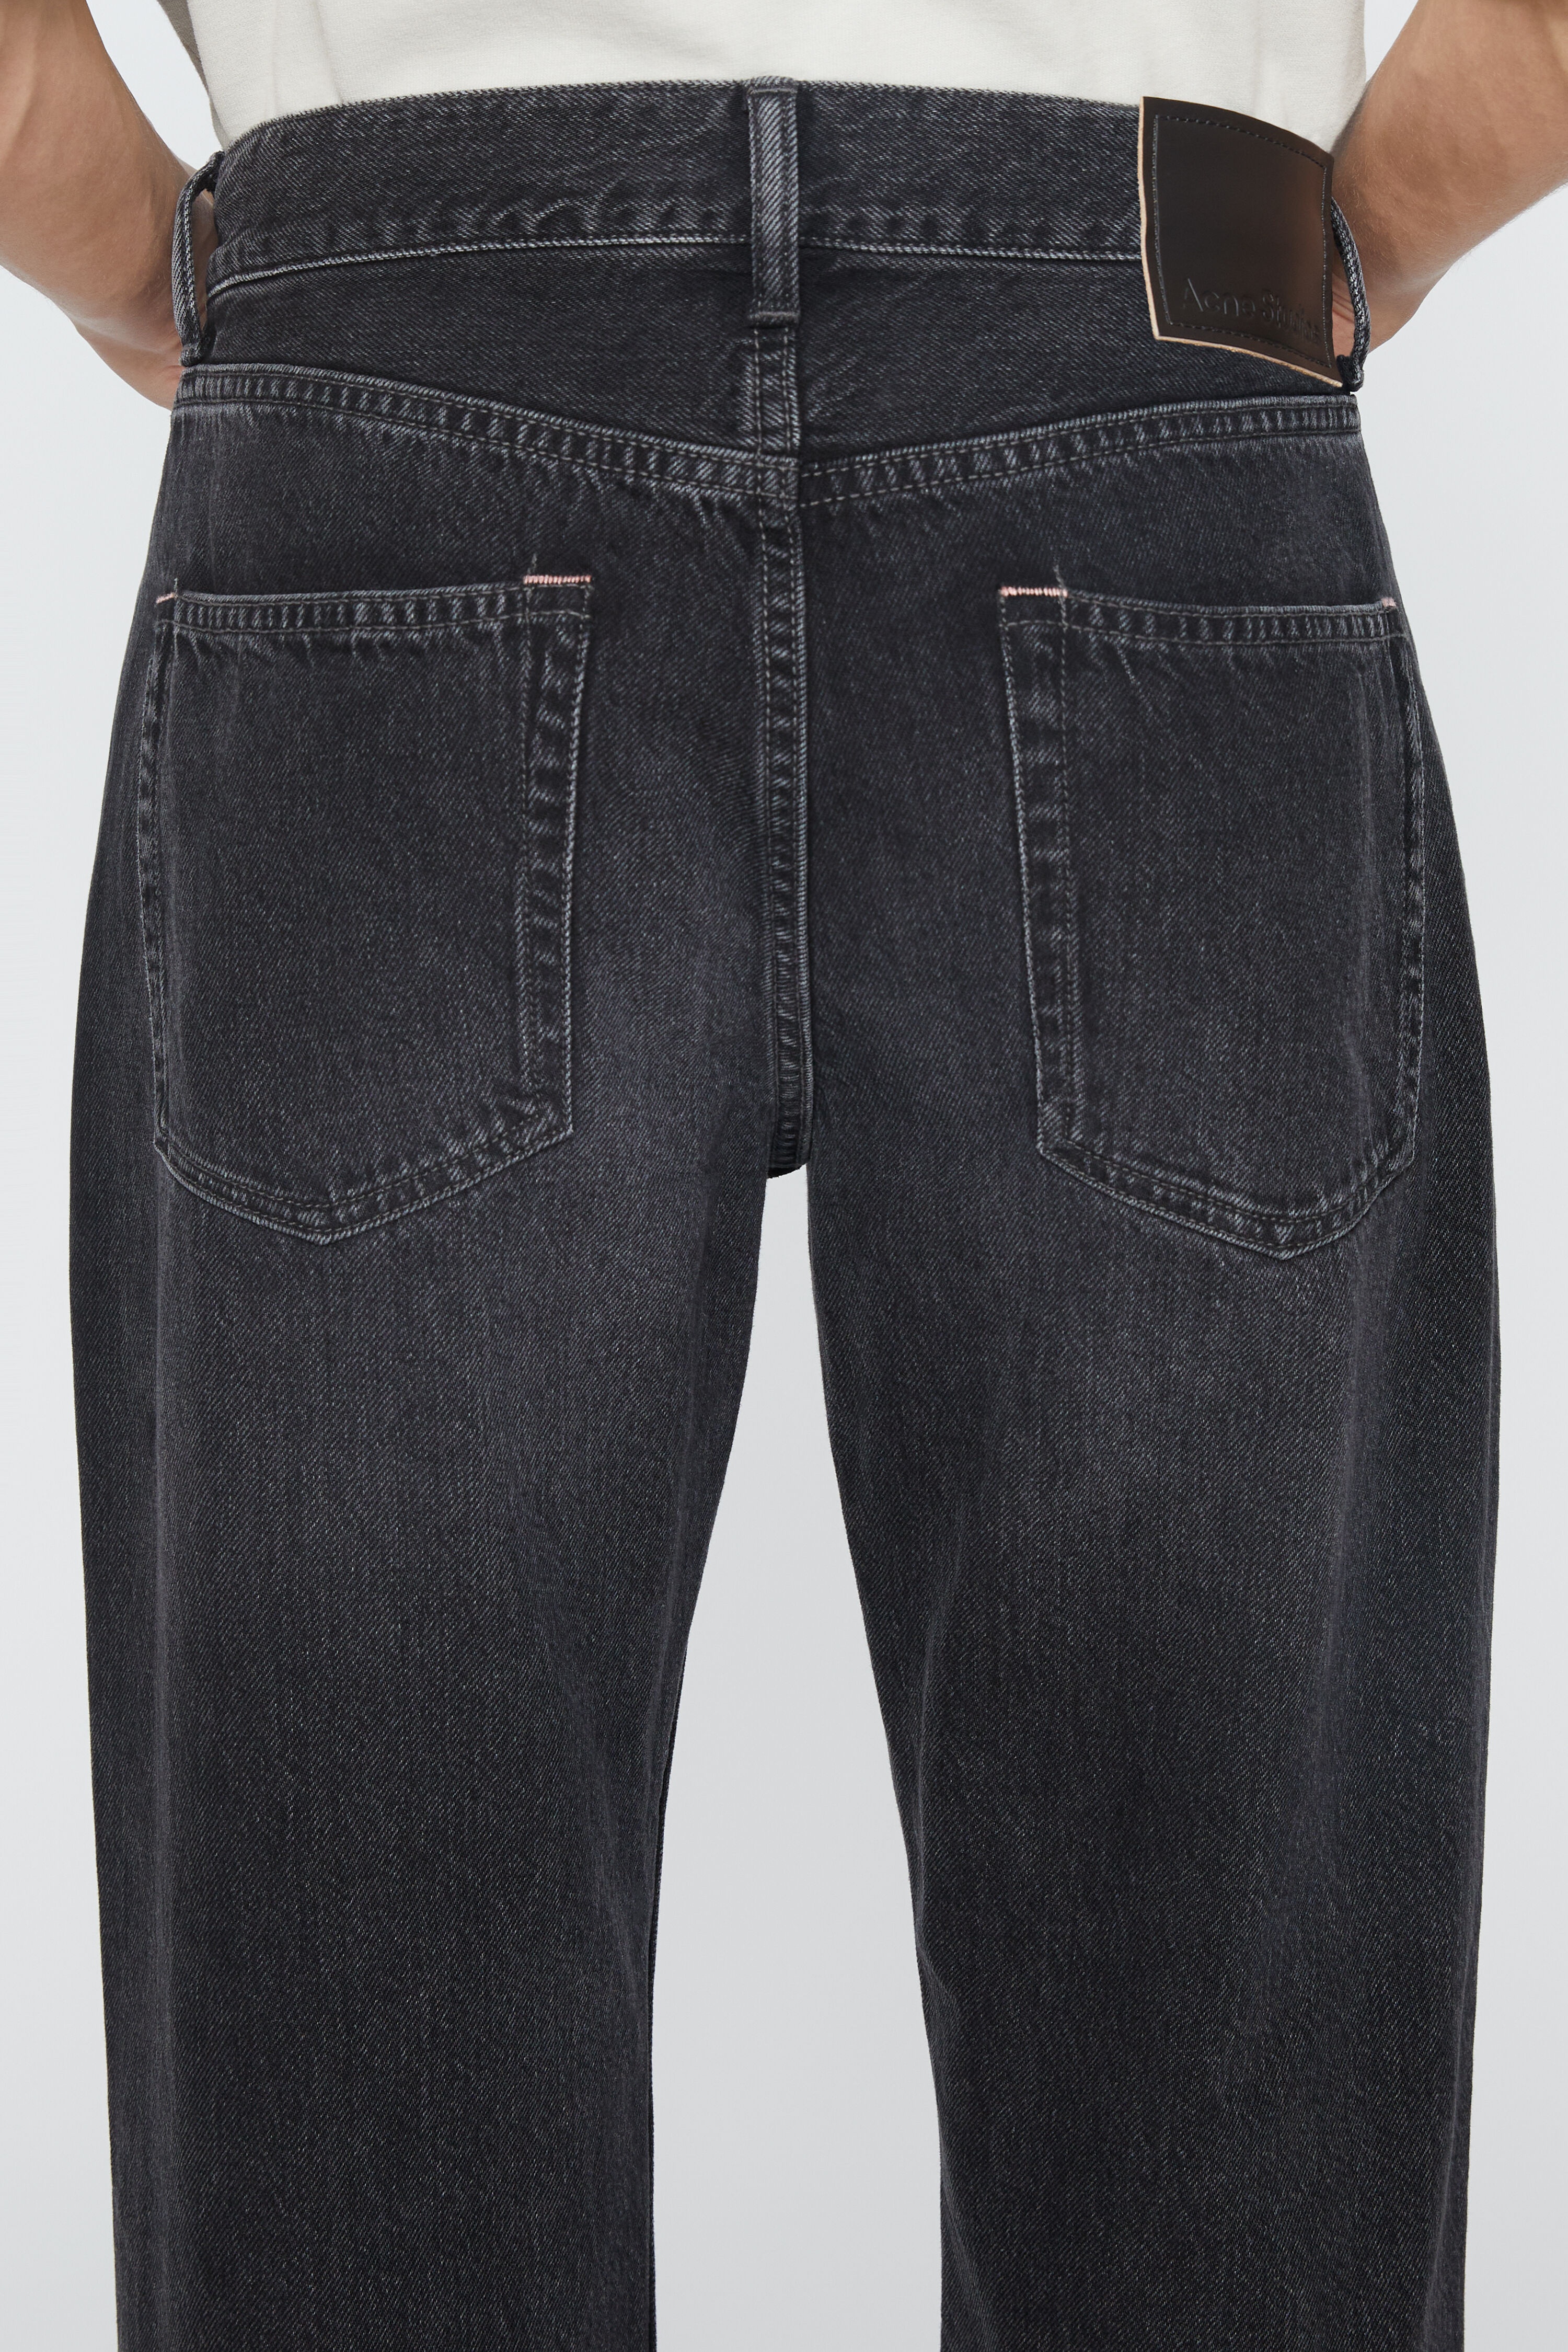 Regular fit jeans - 1992M - Black - 6